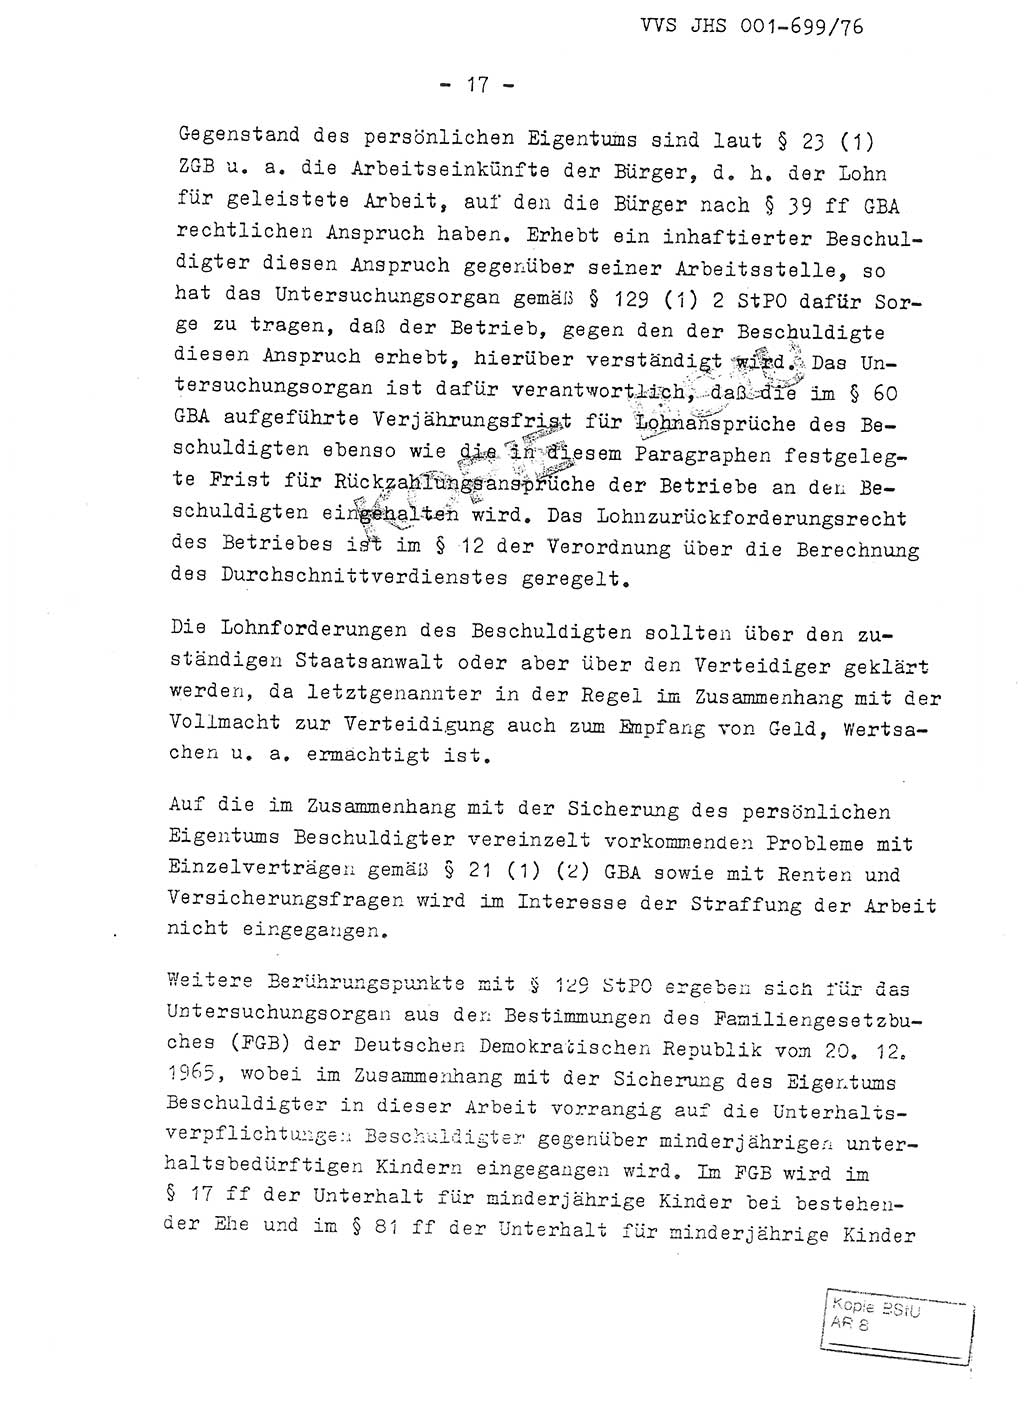 Fachschulabschlußarbeit Leutnant Volkmar Taubert (HA Ⅸ/9), Leutnant Axel Naumann (HA Ⅸ/9), Unterleutnat Detlef Debski (HA Ⅸ/9), Ministerium für Staatssicherheit (MfS) [Deutsche Demokratische Republik (DDR)], Juristische Hochschule (JHS), Vertrauliche Verschlußsache (VVS) 001-699/76, Potsdam 1976, Seite 17 (FS-Abschl.-Arb. MfS DDR JHS VVS 001-699/76 1976, S. 17)